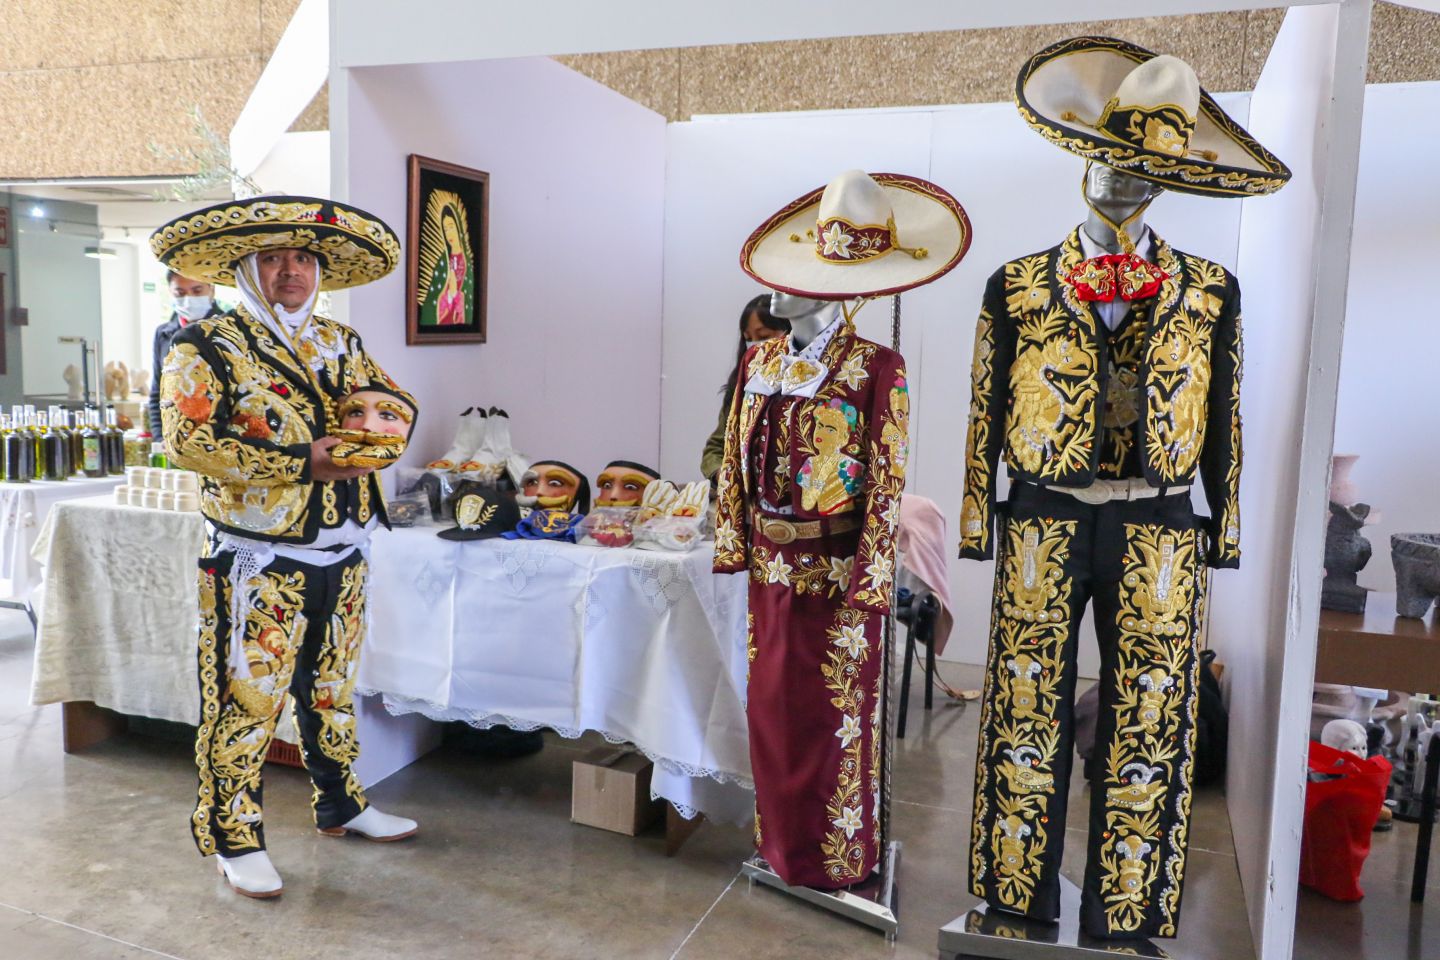 
Presentan cultura y tradiciones de Chimalhuacán en el Centro Cultural Mexiquense Bicentenario
